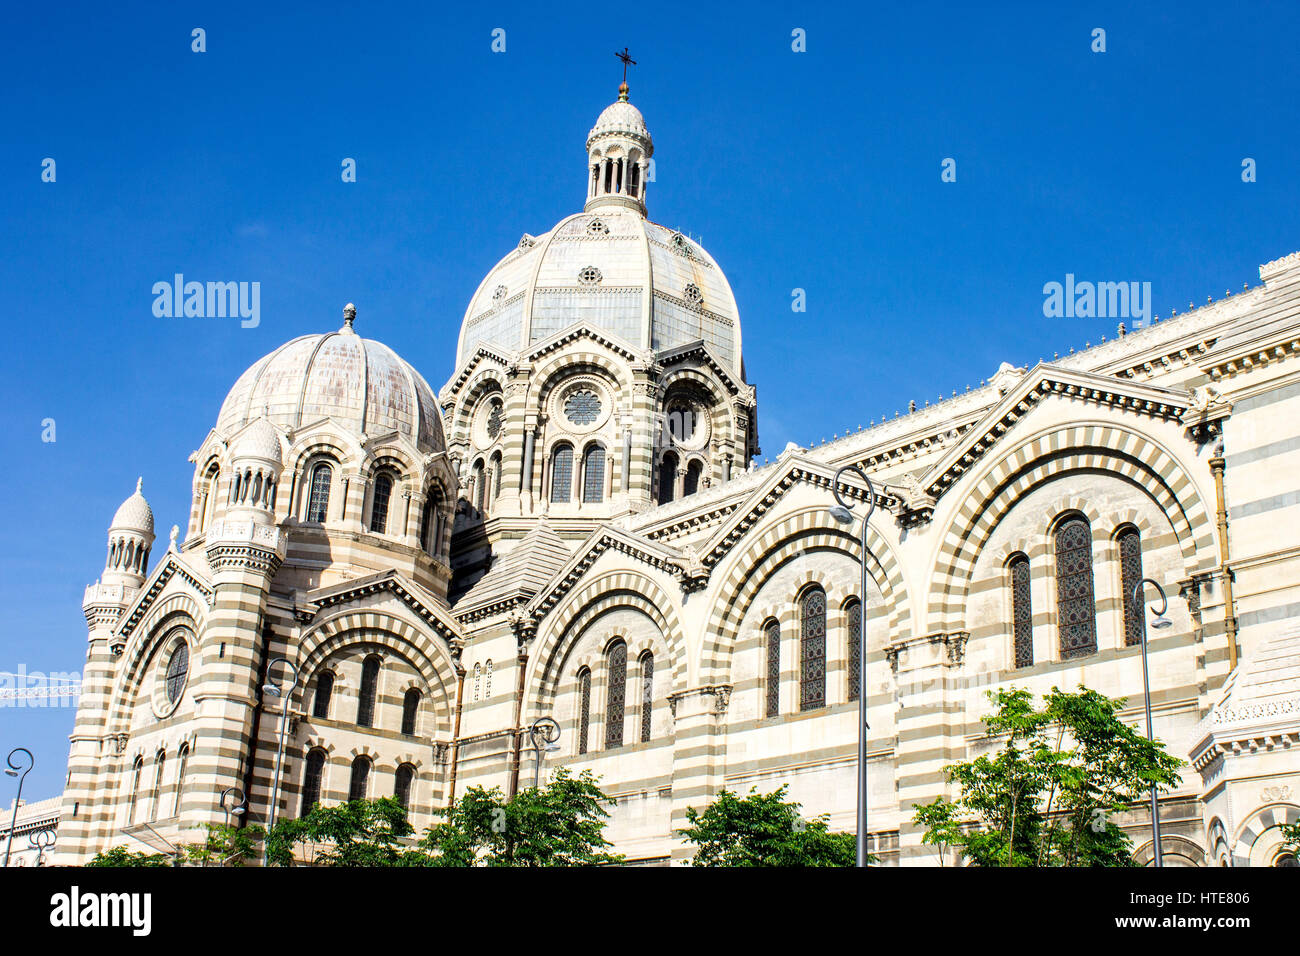 Marseille cathédrale (Cathédrale Sainte-Marie-Majeure ou cathédrale de la major), une cathédrale catholique romaine et un monument national de la France. Banque D'Images